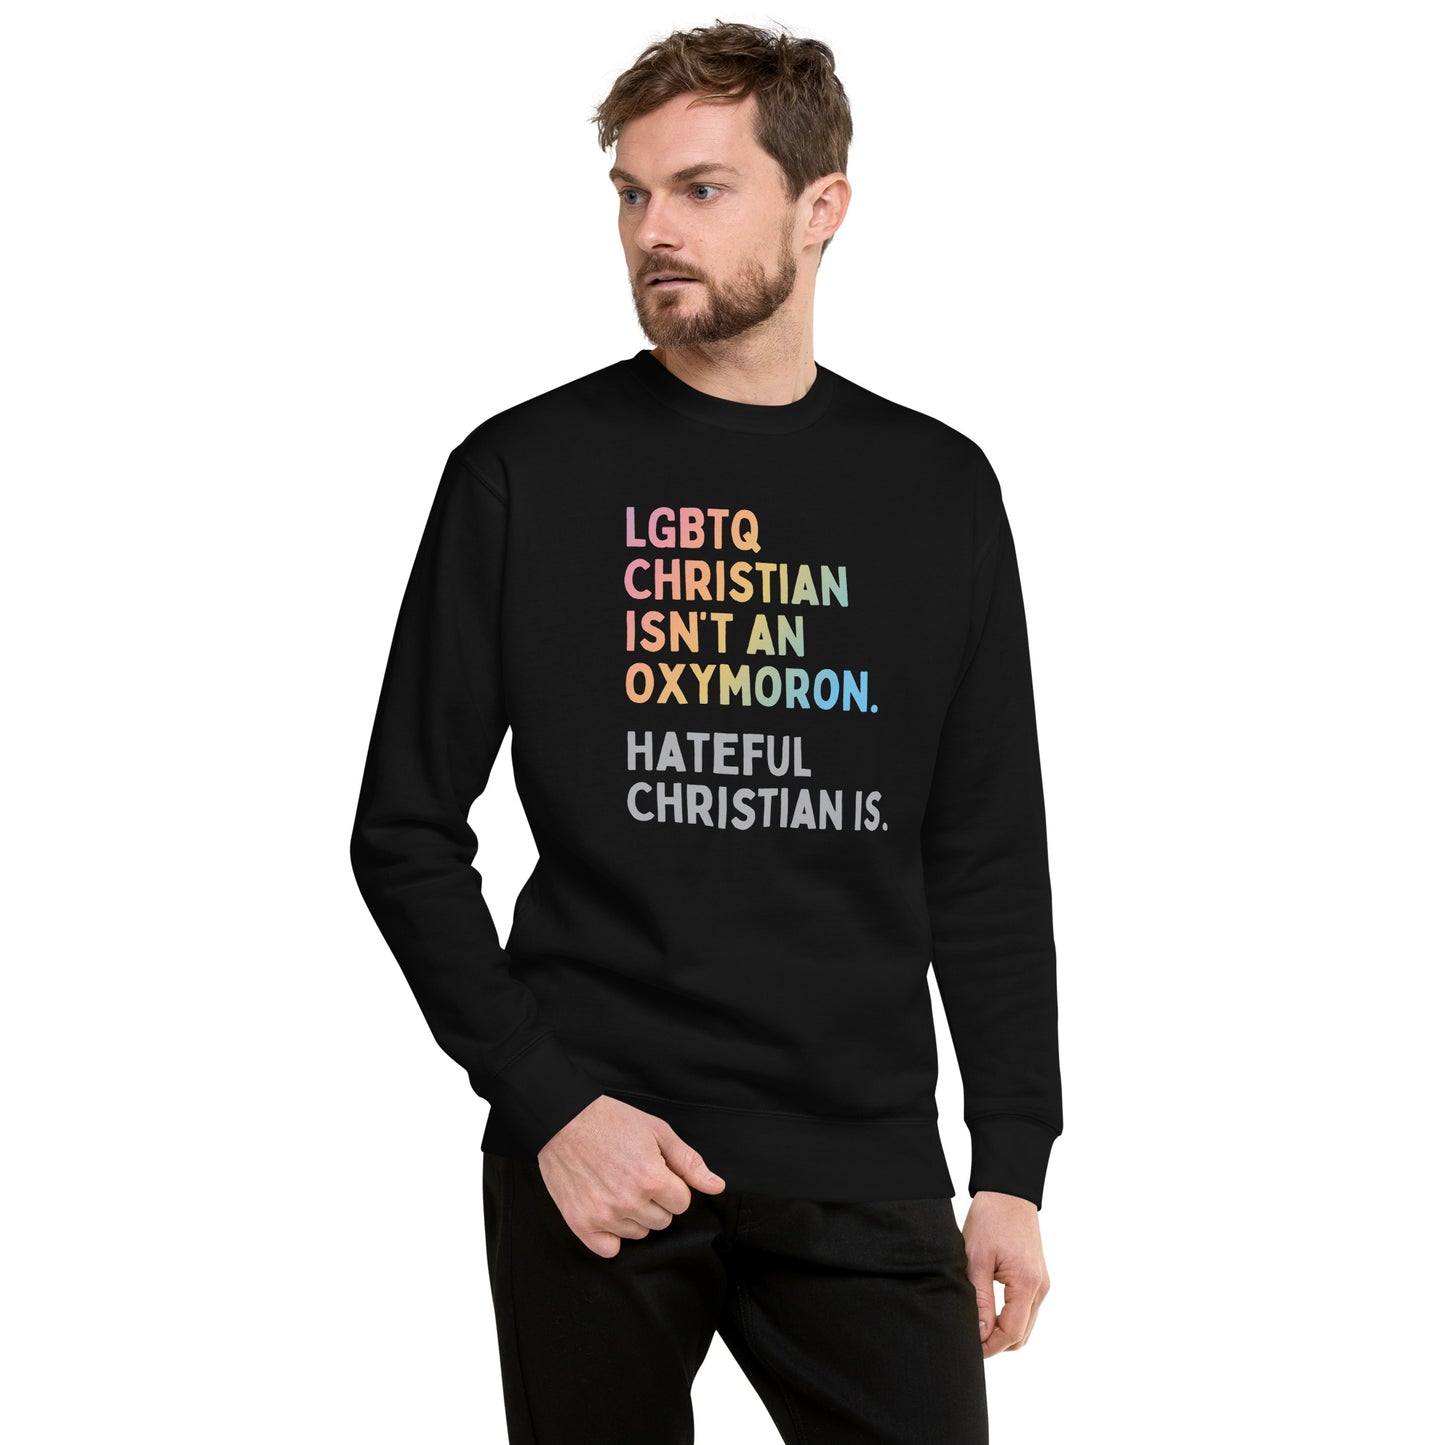 Oxymoron - Sweatshirt